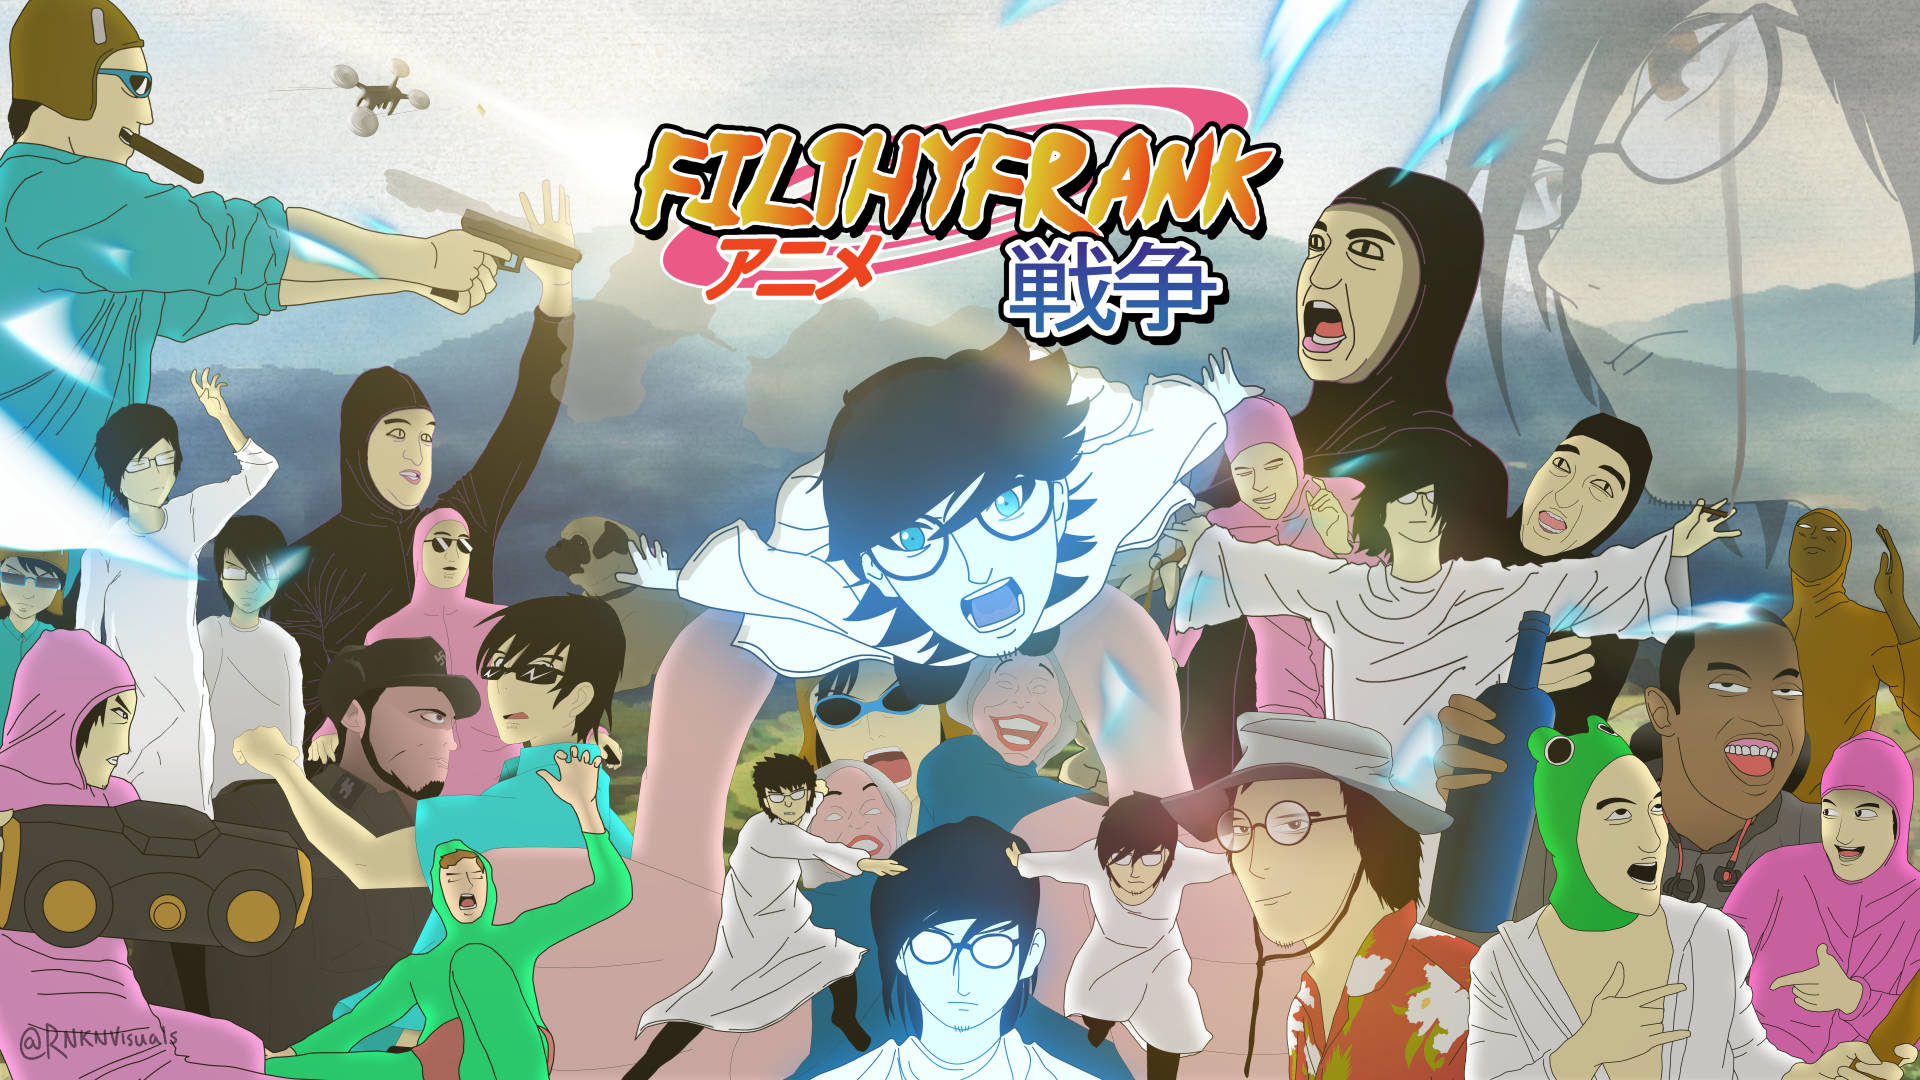 Filthyfrank Como Anime. Fondo de pantalla